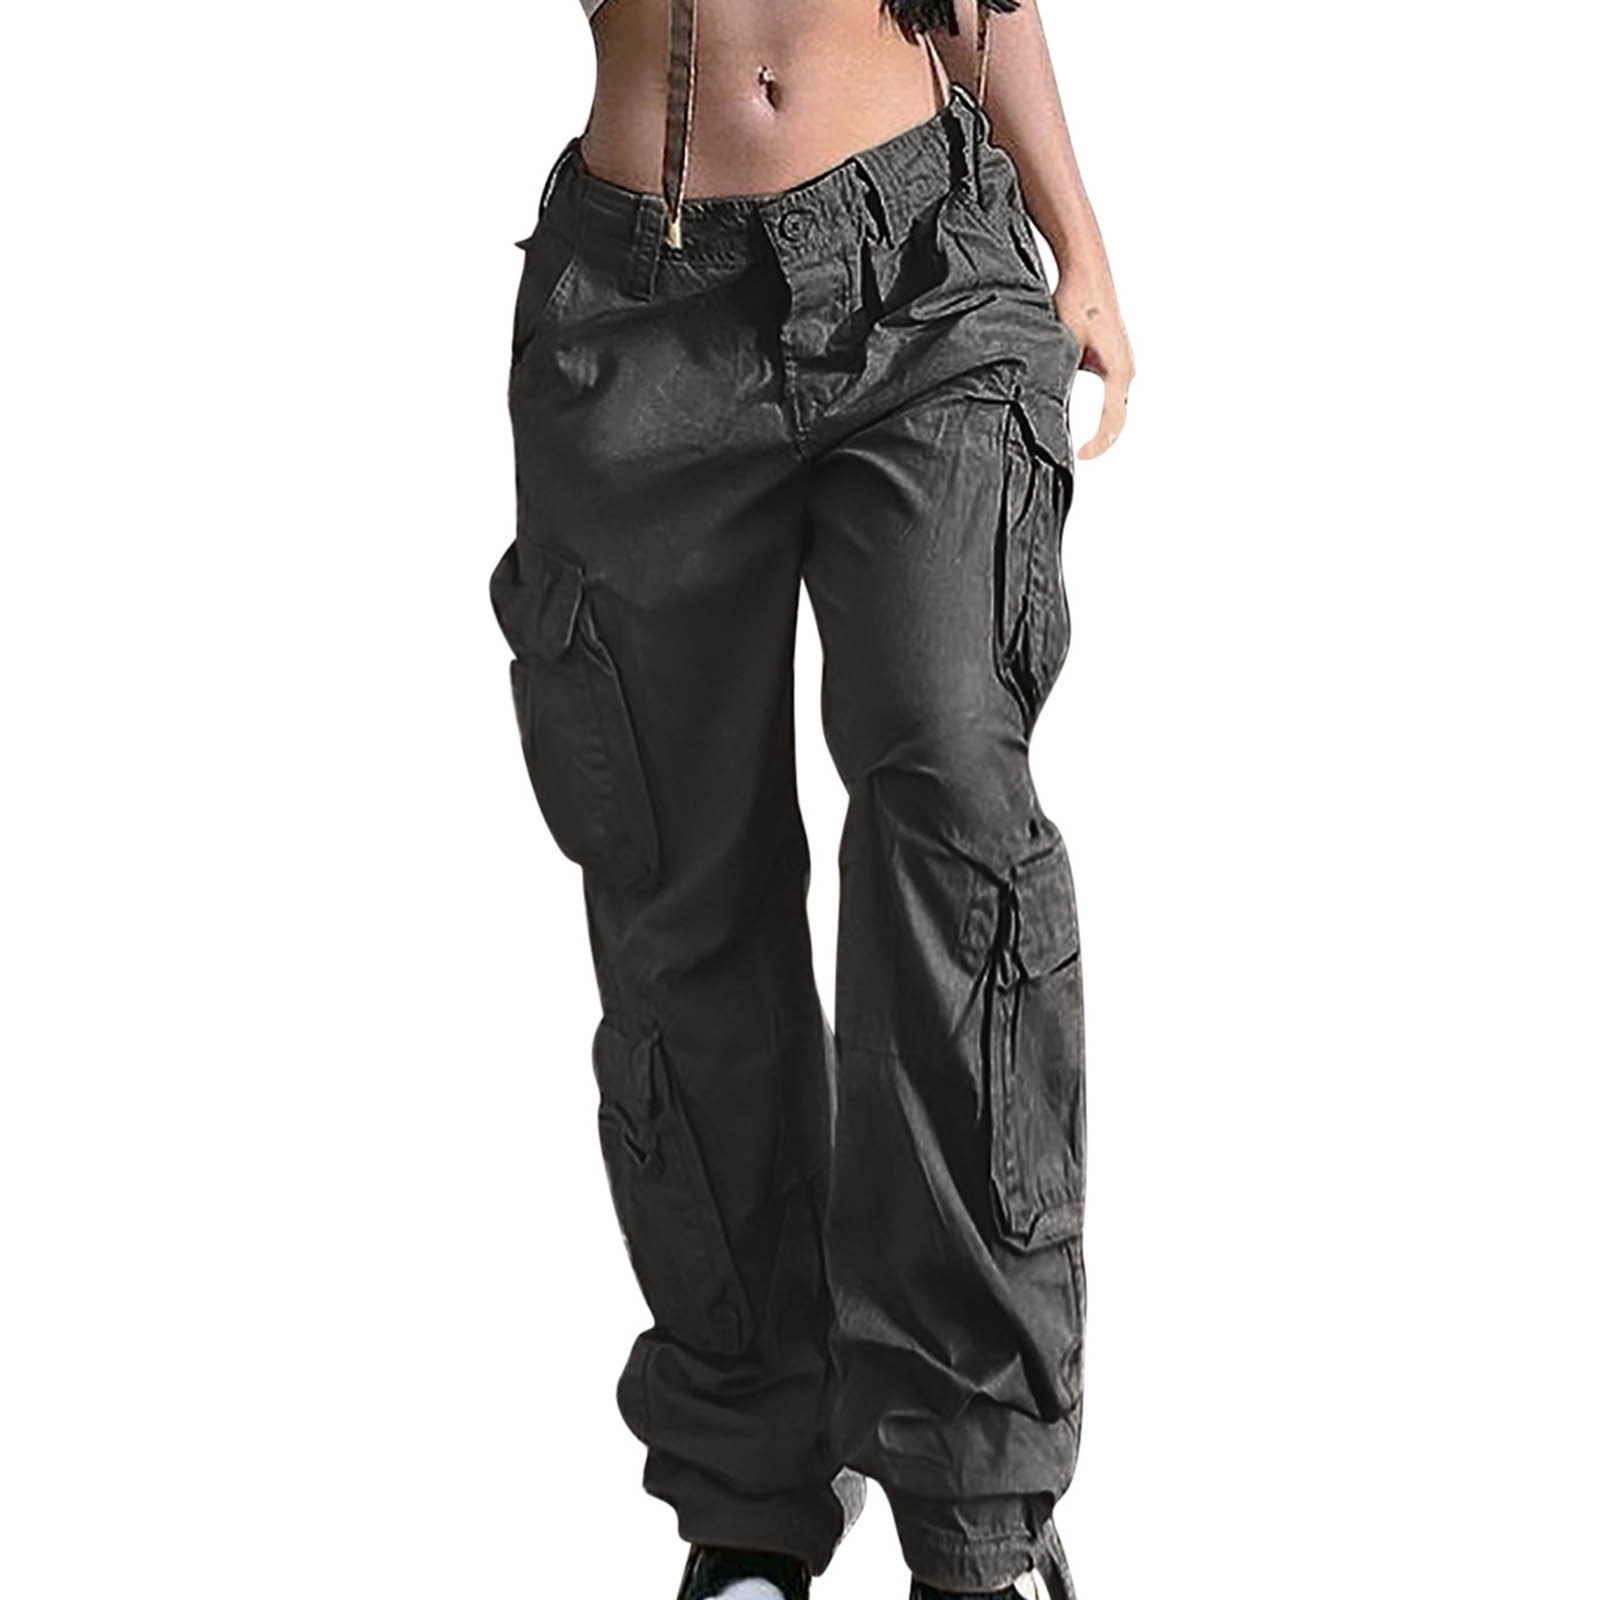 DISCIPBUSH Cargo Pants Women - Parachute Pants for Women Trendy, Womens  Cargo Pants Y2K Pants, Cargo Pants for Girls' Fashion, Baggy Pants Women  Cargo Pants, Black Cargo Pants Woman XXS at